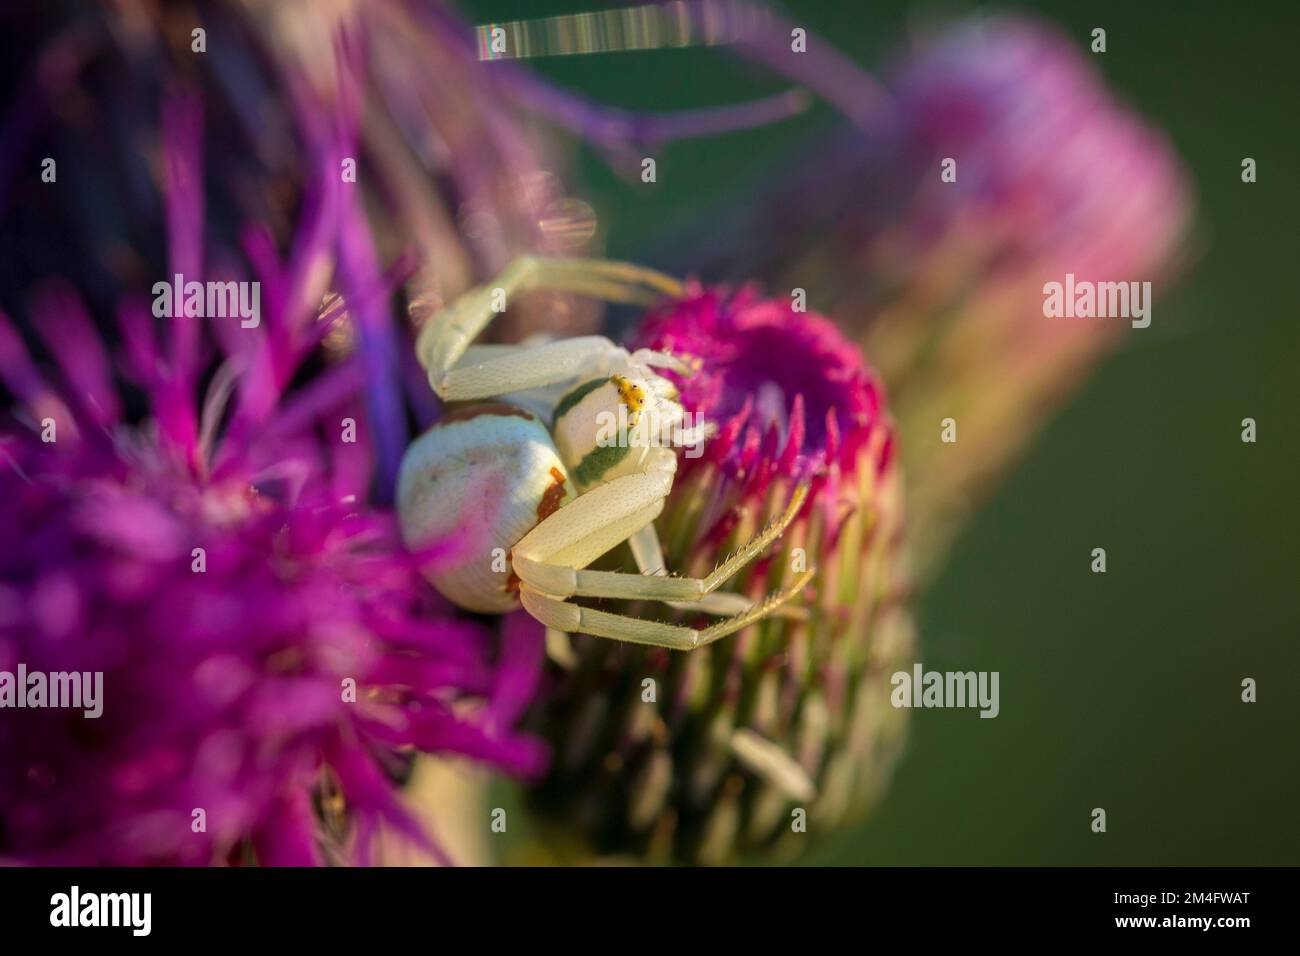 Araignée de crabe de Goldenrod (Misumena vatia) sur une fleur. Gros plan de l'araignée de crabe de fleur jaune Misumena vatia. Thème araignée, arachnophobie, collecti araignée Banque D'Images